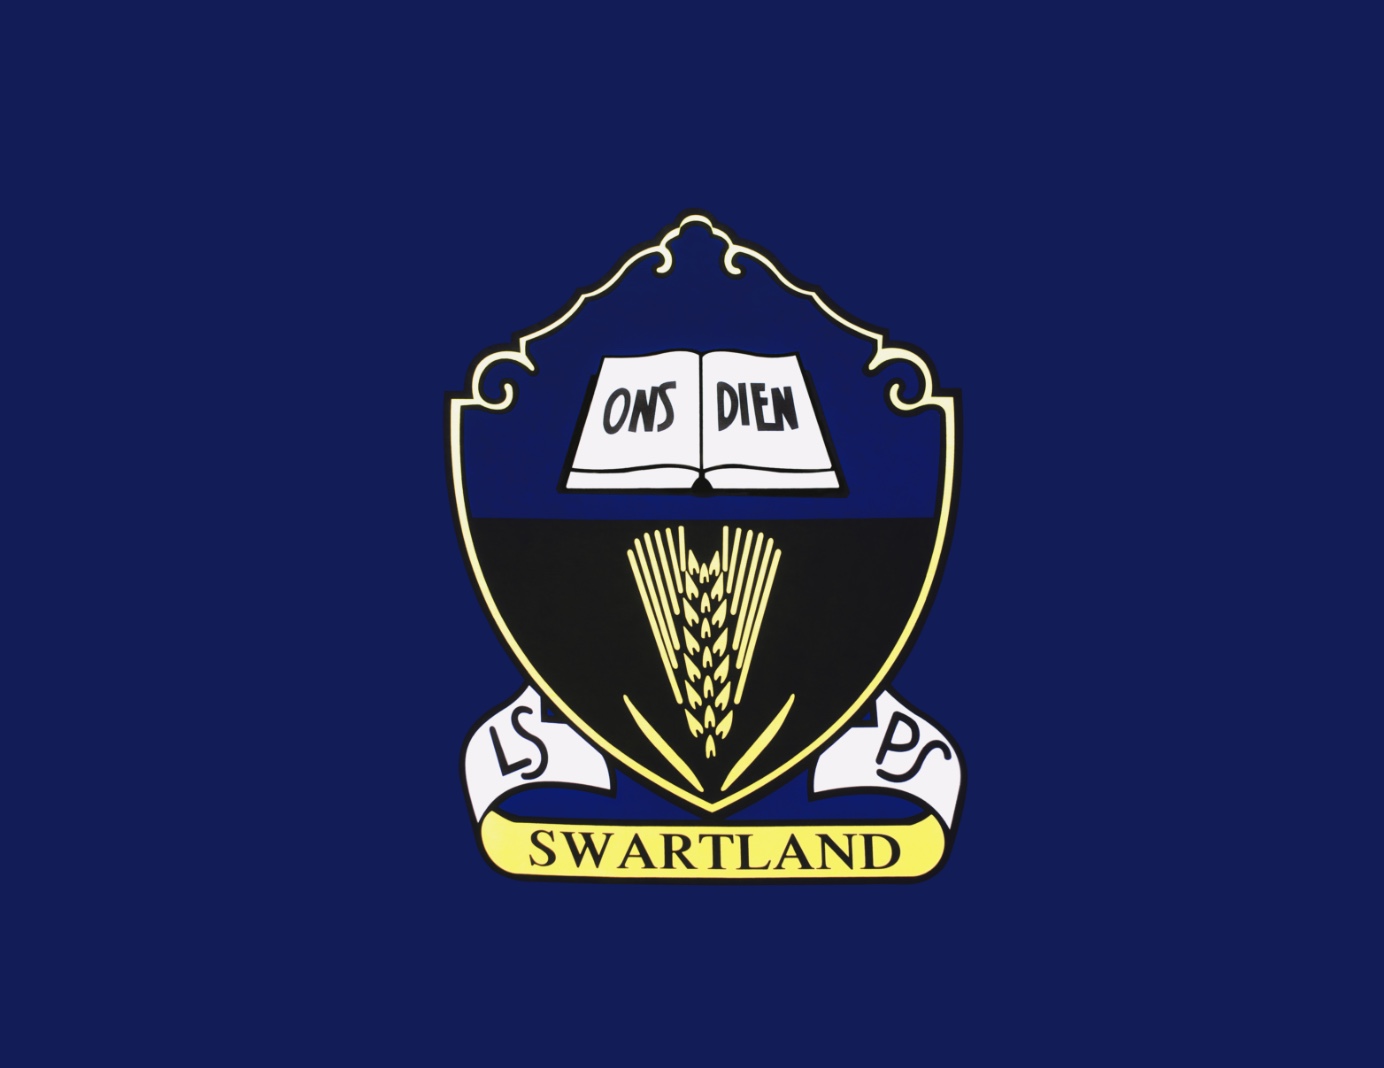 laerskool swartland